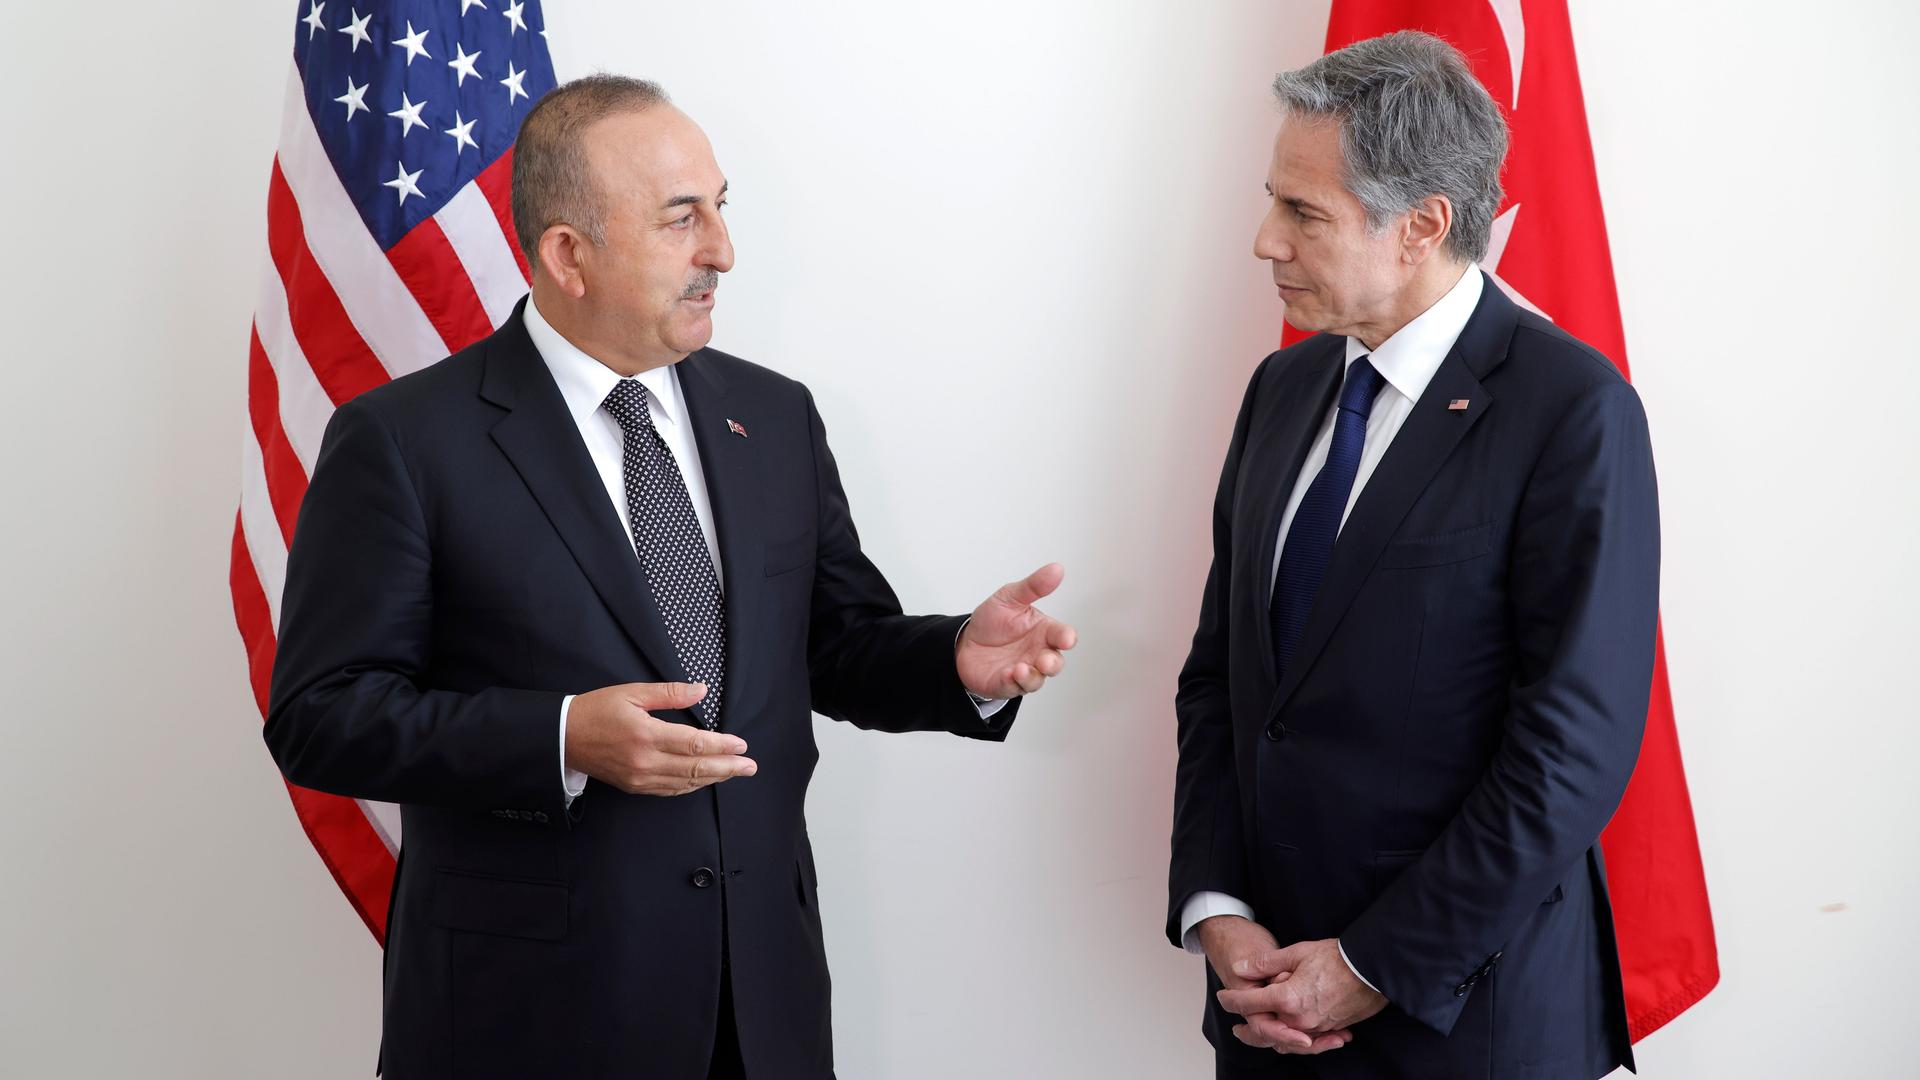 Zwei Männer stehen nebeneinander und unterhalten sich, hinter ihnen hängen die Fahnen der USA und der Türkei.